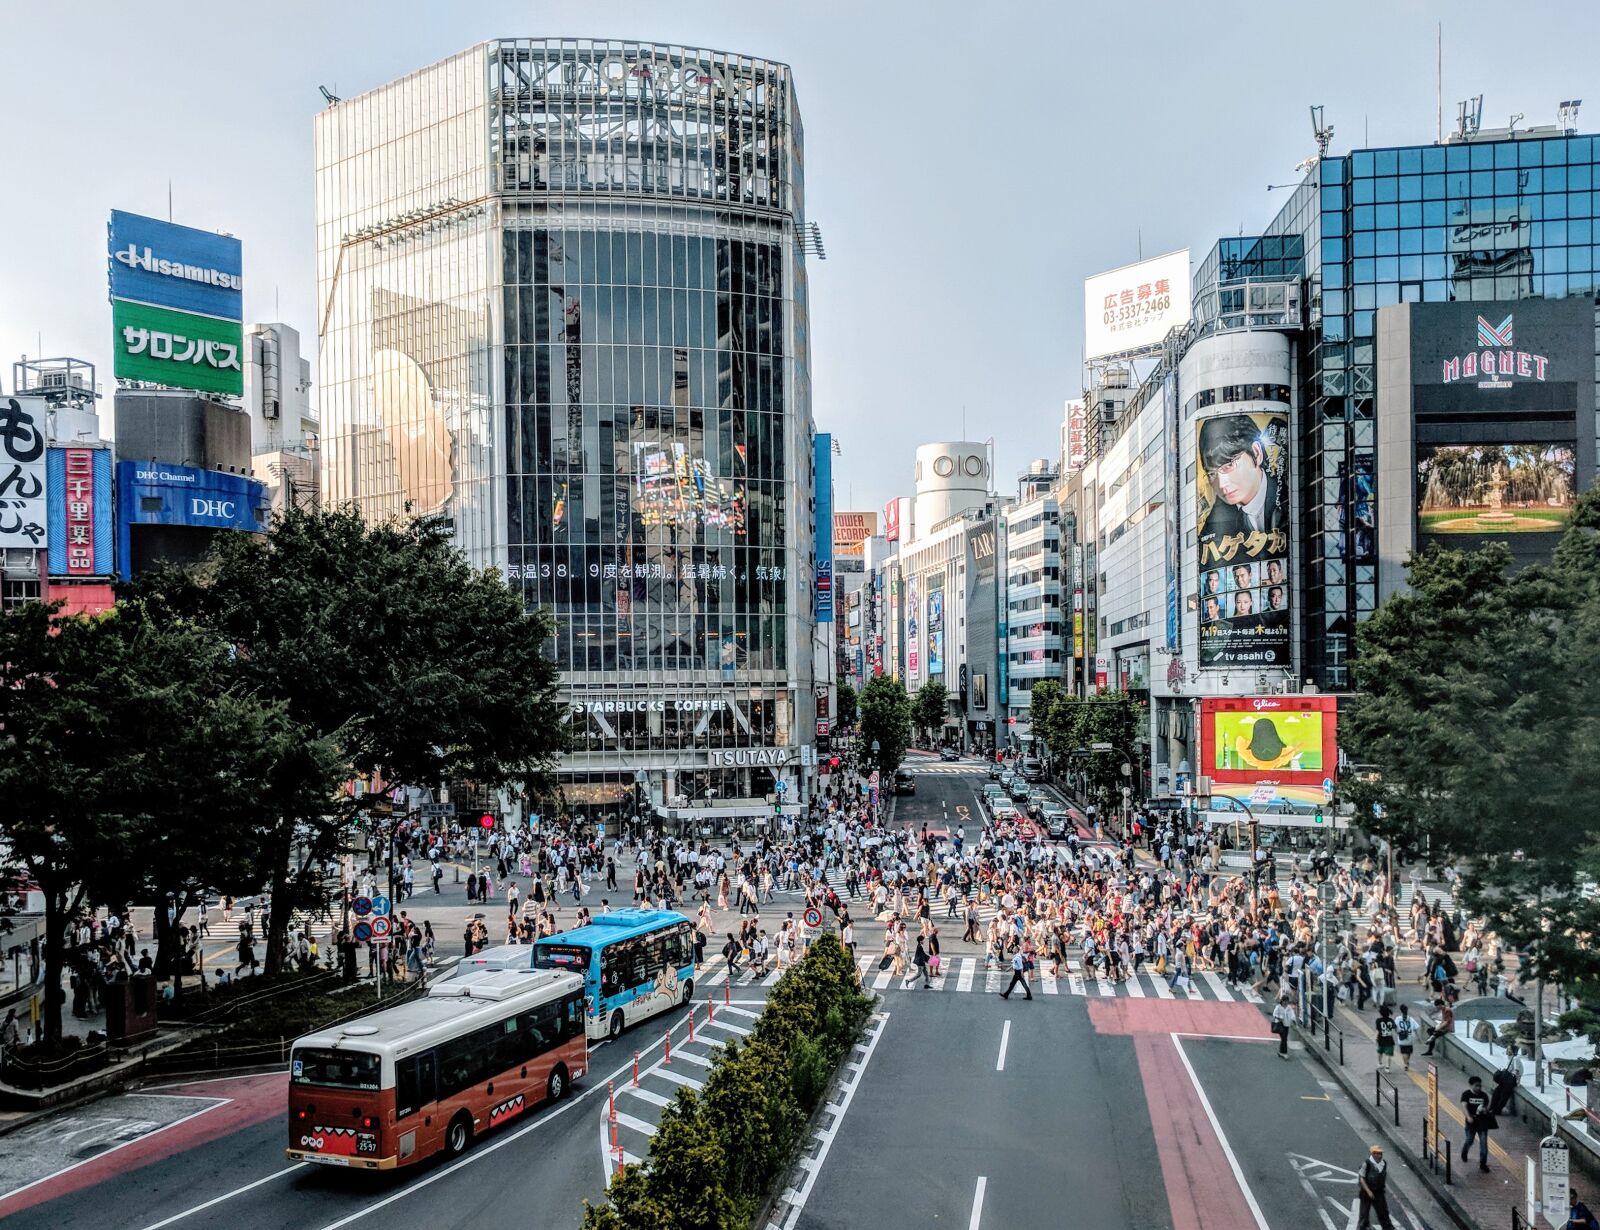 Google Pixel sample photo. Shibuya, japan, travel photography